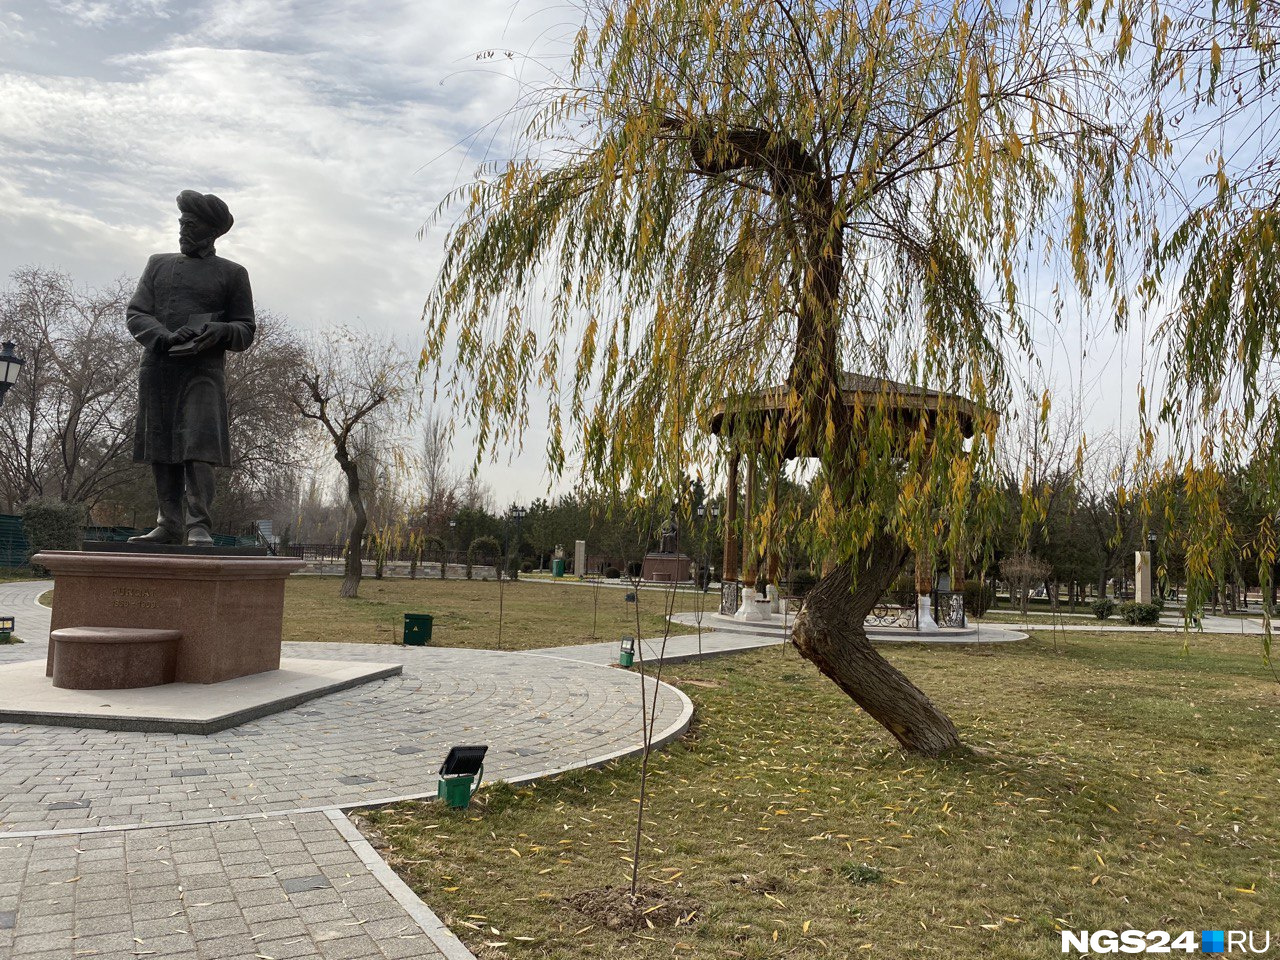 Ташкент, по словам Евгении, более зеленый, чем Красноярск